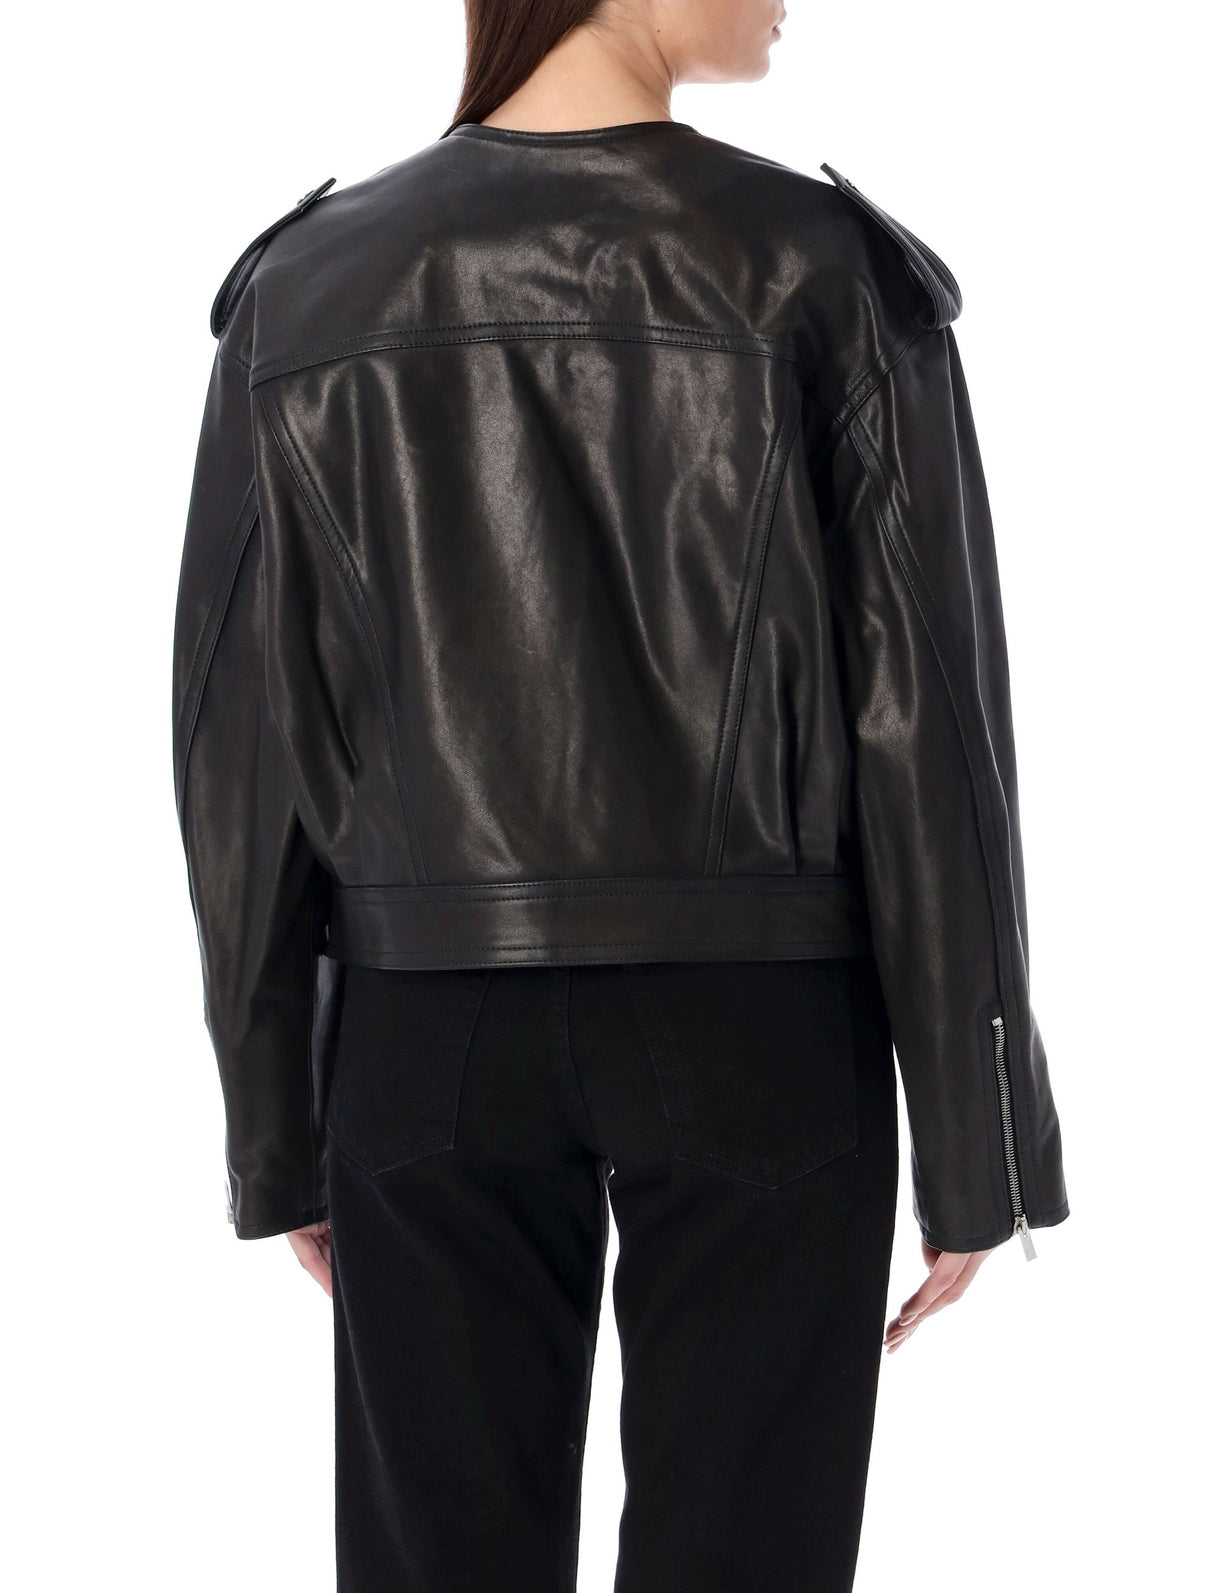 Áo khoác da nữ thời trang đen lịch lãm với chi tiết cá tính